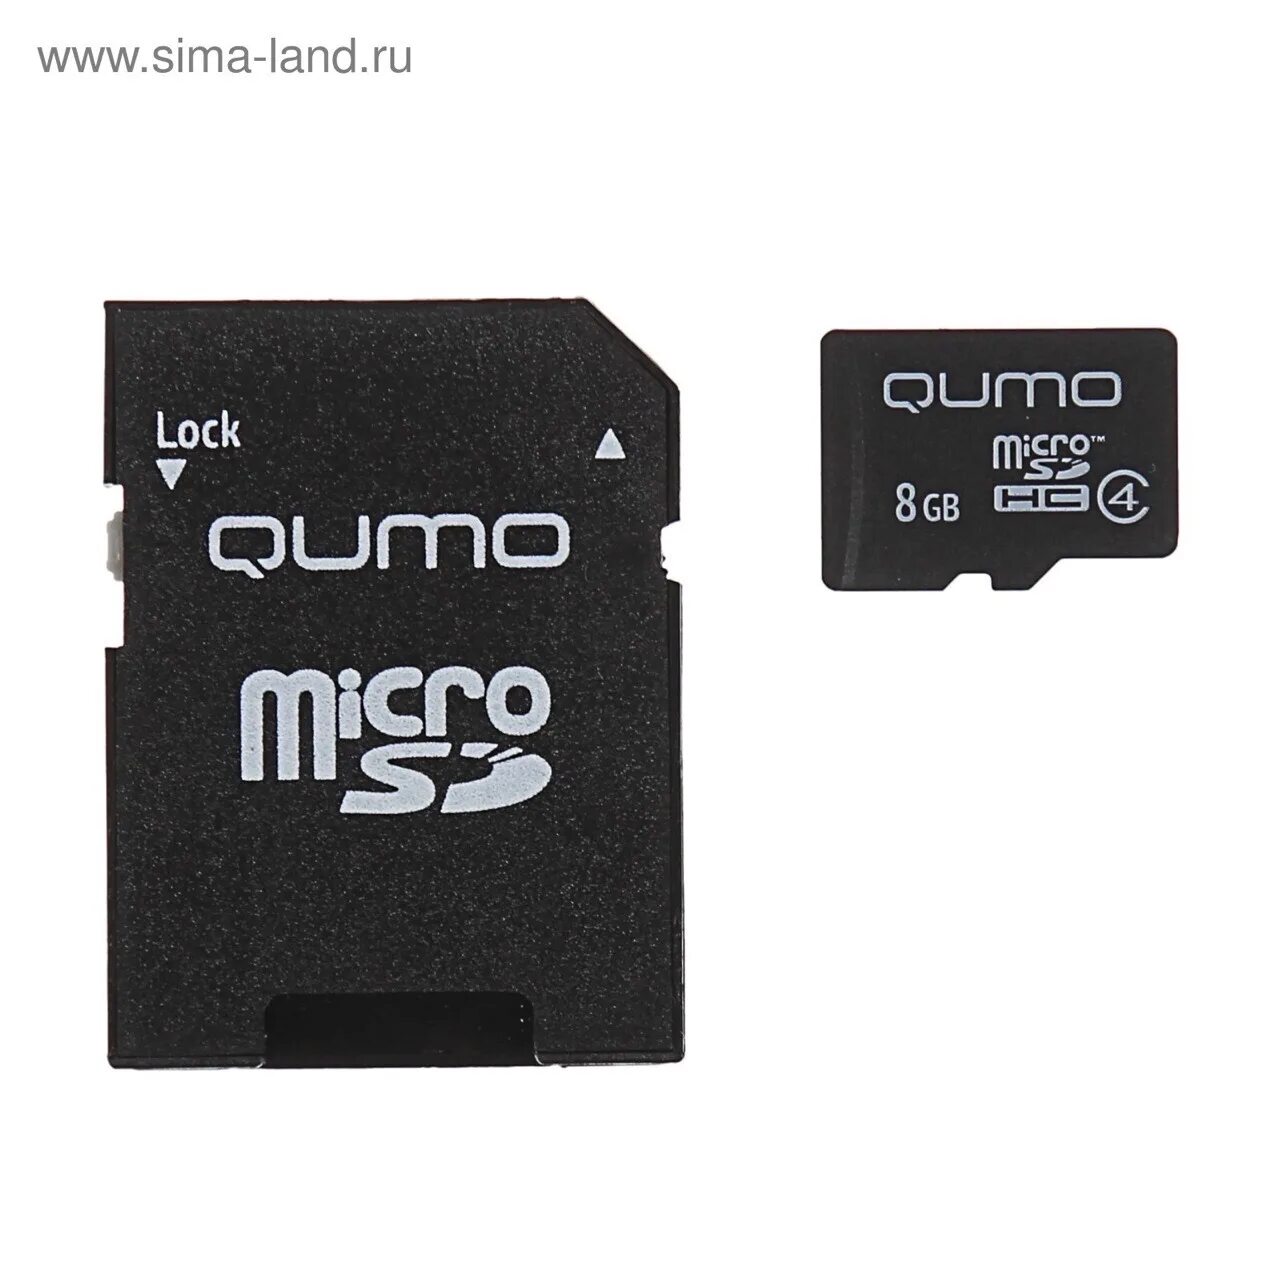 Микро сиди карта. Qumo MICROSD 8gb. Qumo карта памяти 4 ГБ. Карта флэш-памяти MICROSD 8 ГБ Qumo без SD адаптера (class 10). Карта памяти MICROSDHC 8гб class 10 с адаптером SD Qumo.